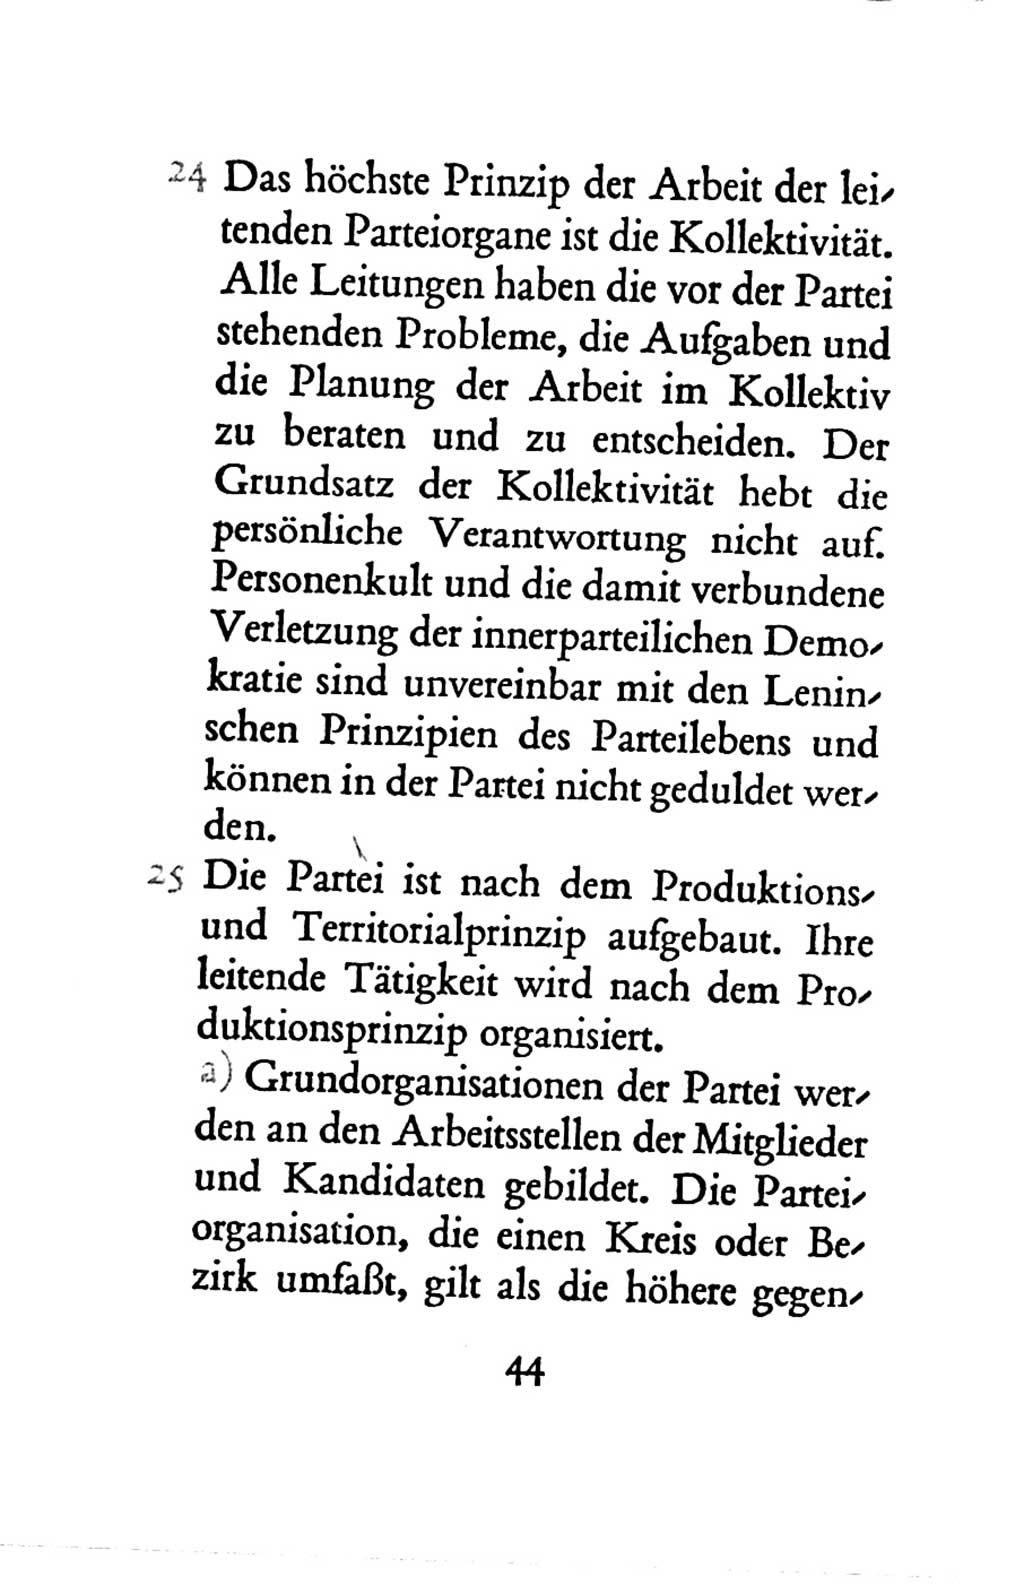 Statut der Sozialistischen Einheitspartei Deutschlands (SED) 1963, Seite 44 (St. SED DDR 1963, S. 44)